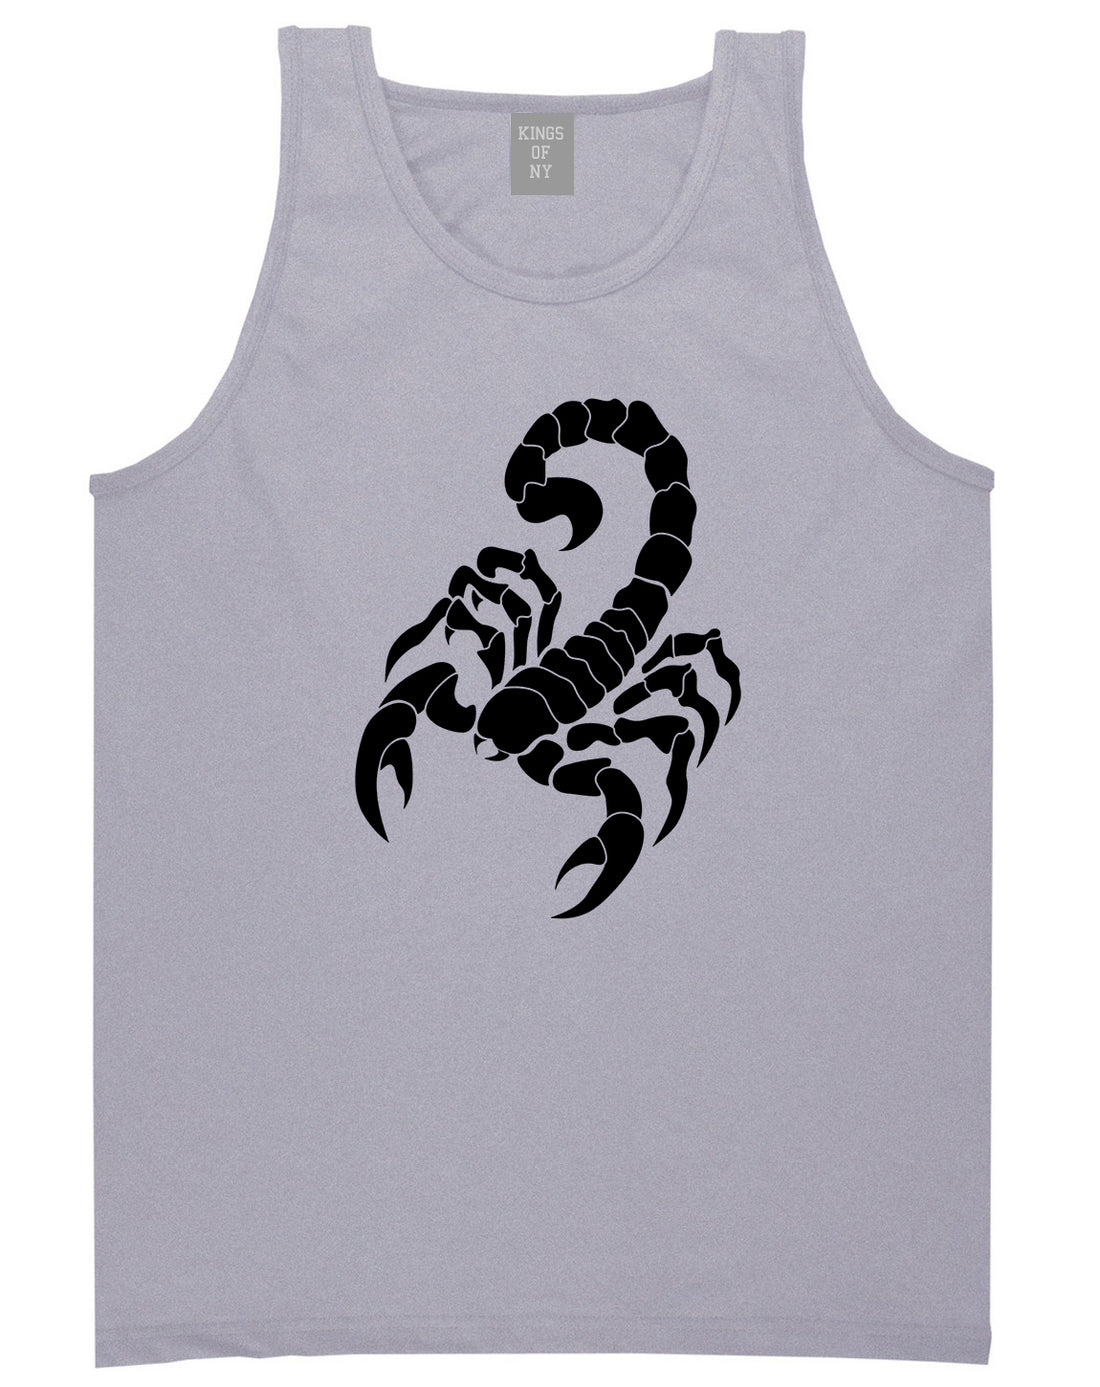 Scorpion Mens Tank Top Shirt Grey by Kings Of NY